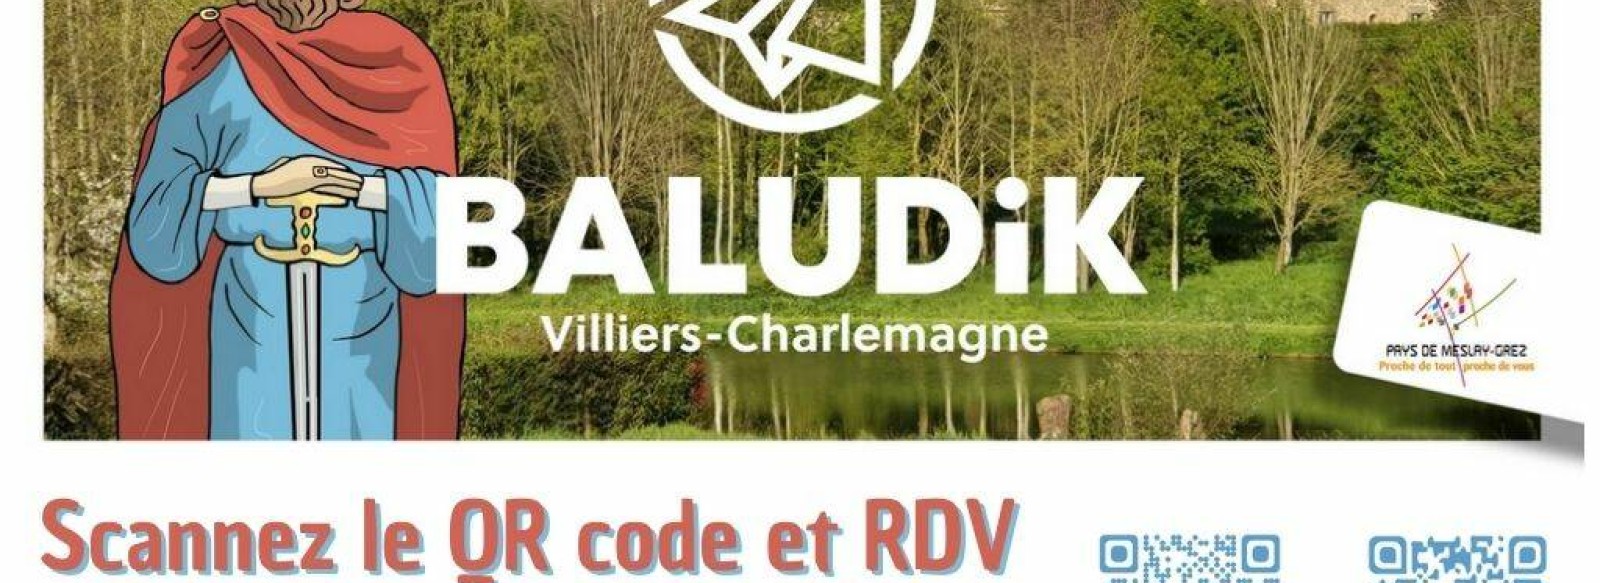 PARCOURS BALUDIK : A LA TABLE DE CHARLEMAGNE !